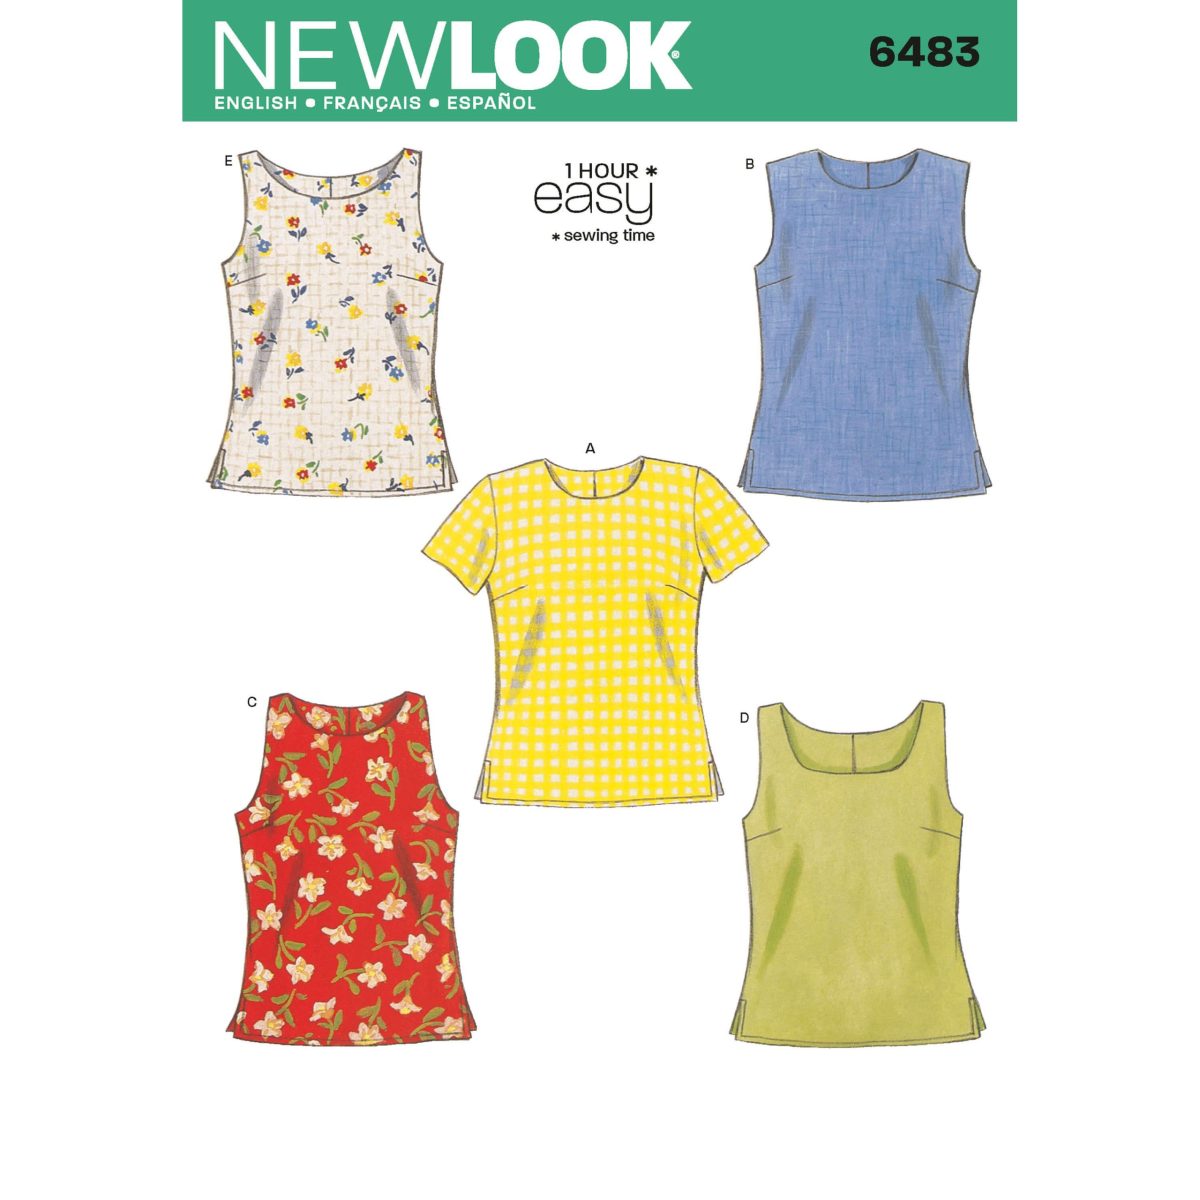 New Look Sewing Pattern N6483 Misses' Tops